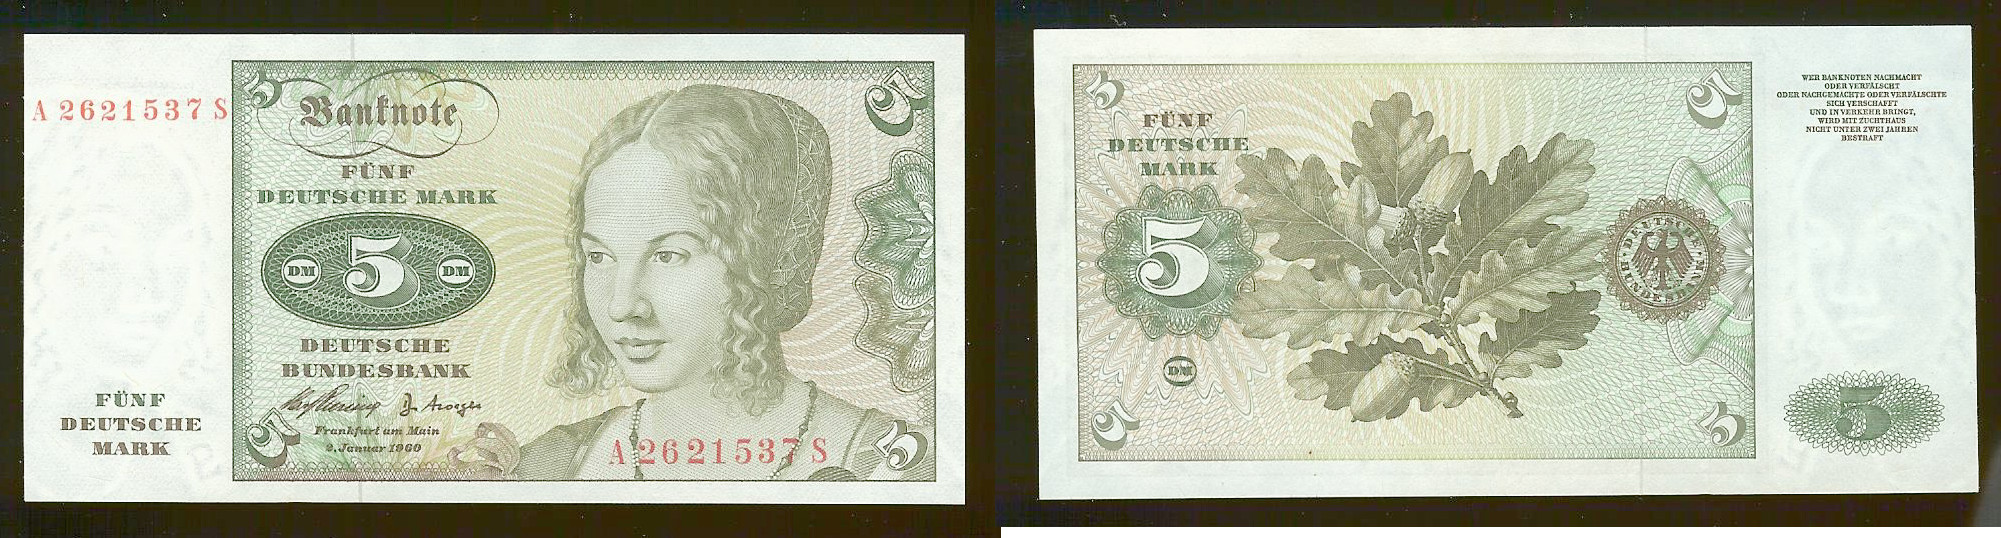 5 Deutsche Mark ALLEMAGNE FÉDÉRALE 1960 SPL-